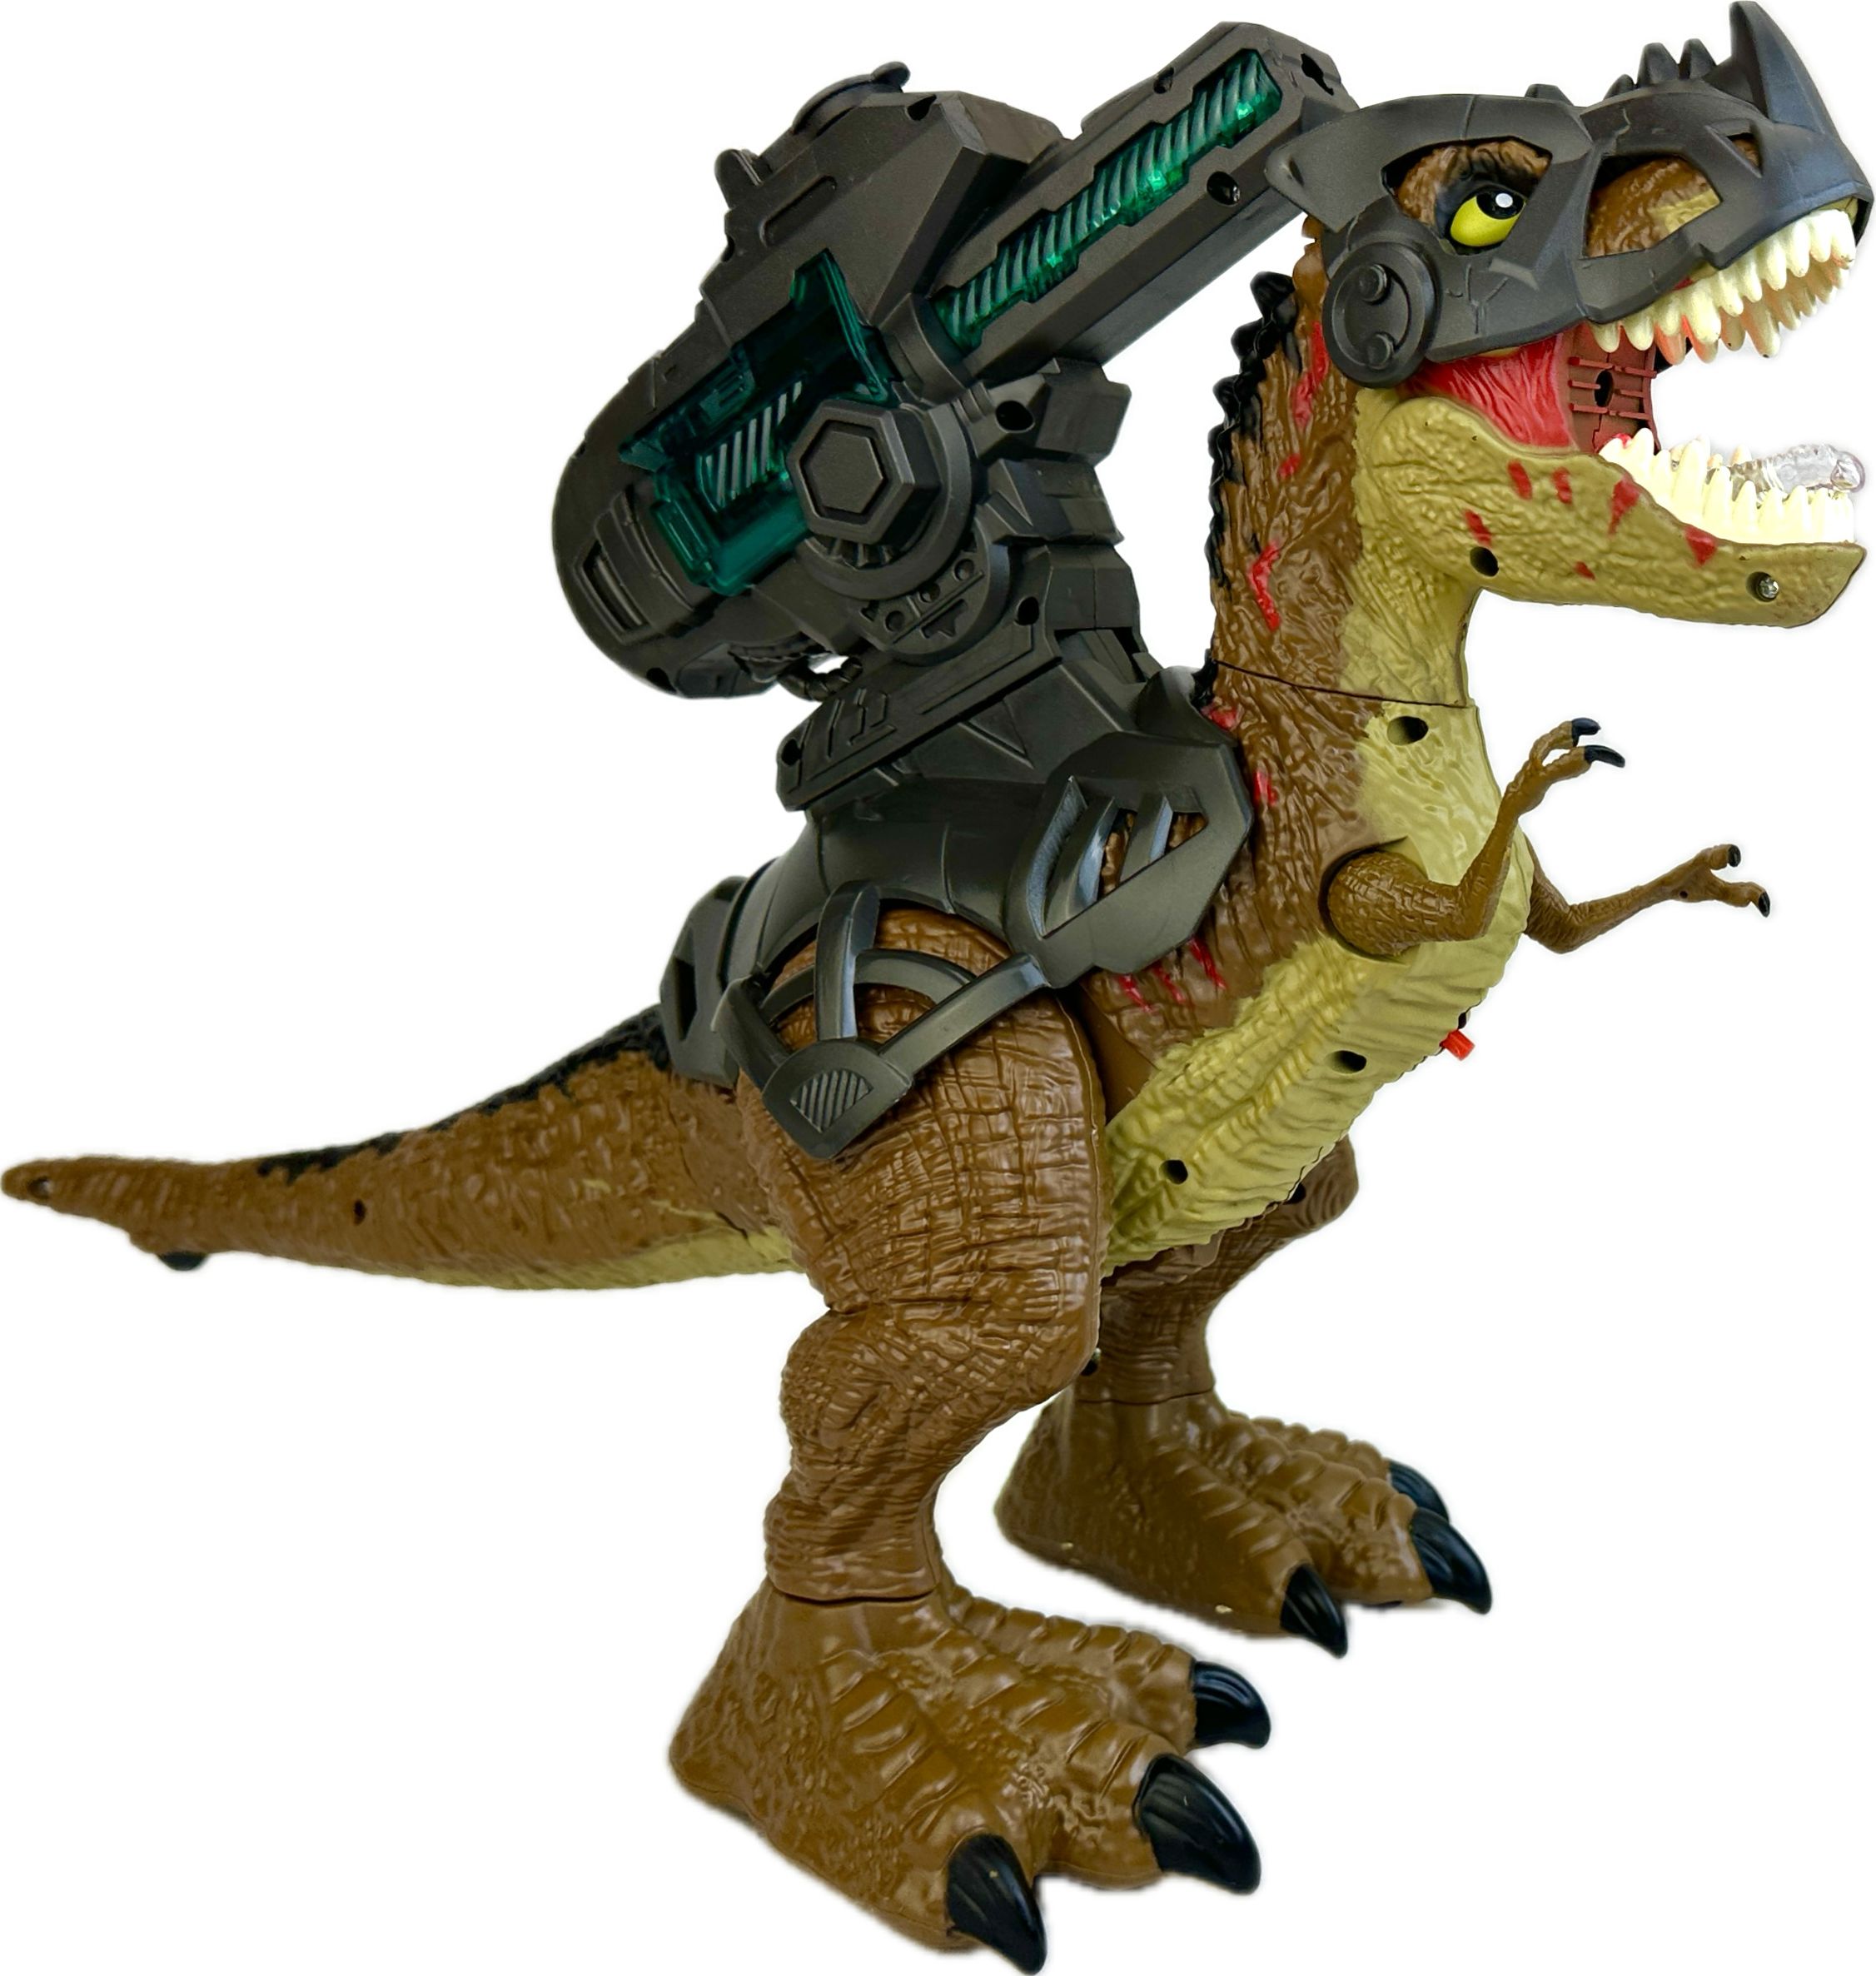 Радиоуправляемый робот Dinosaurs Island Toys динозавр Тираннозавр стреляет